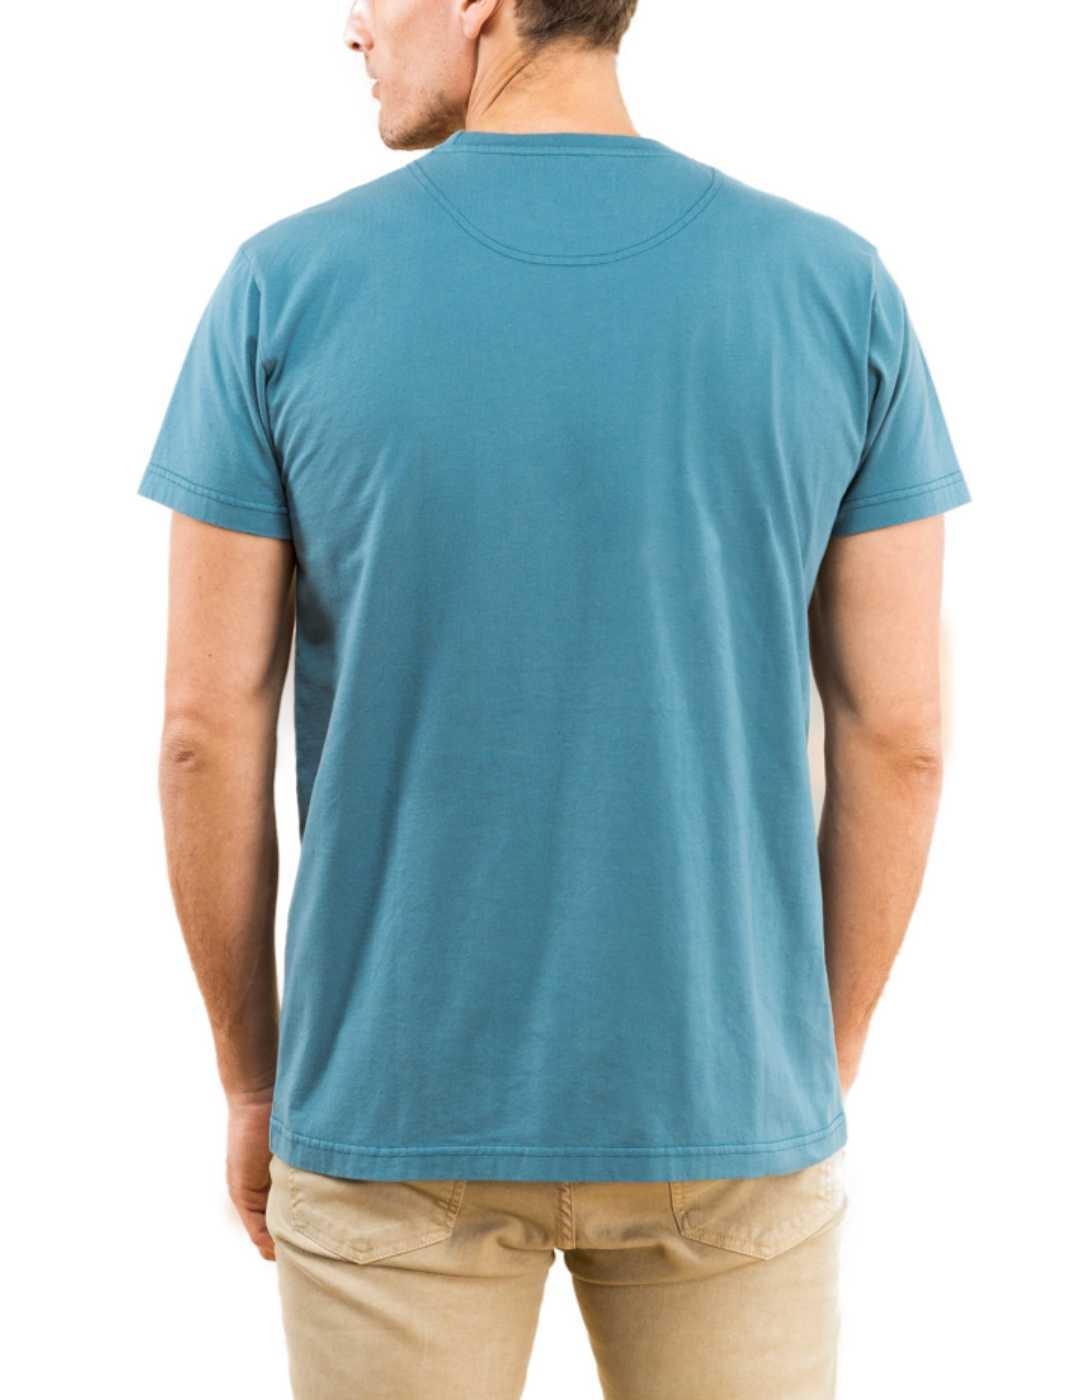 Camiseta Scotta 1985 azul manga corta de hombre